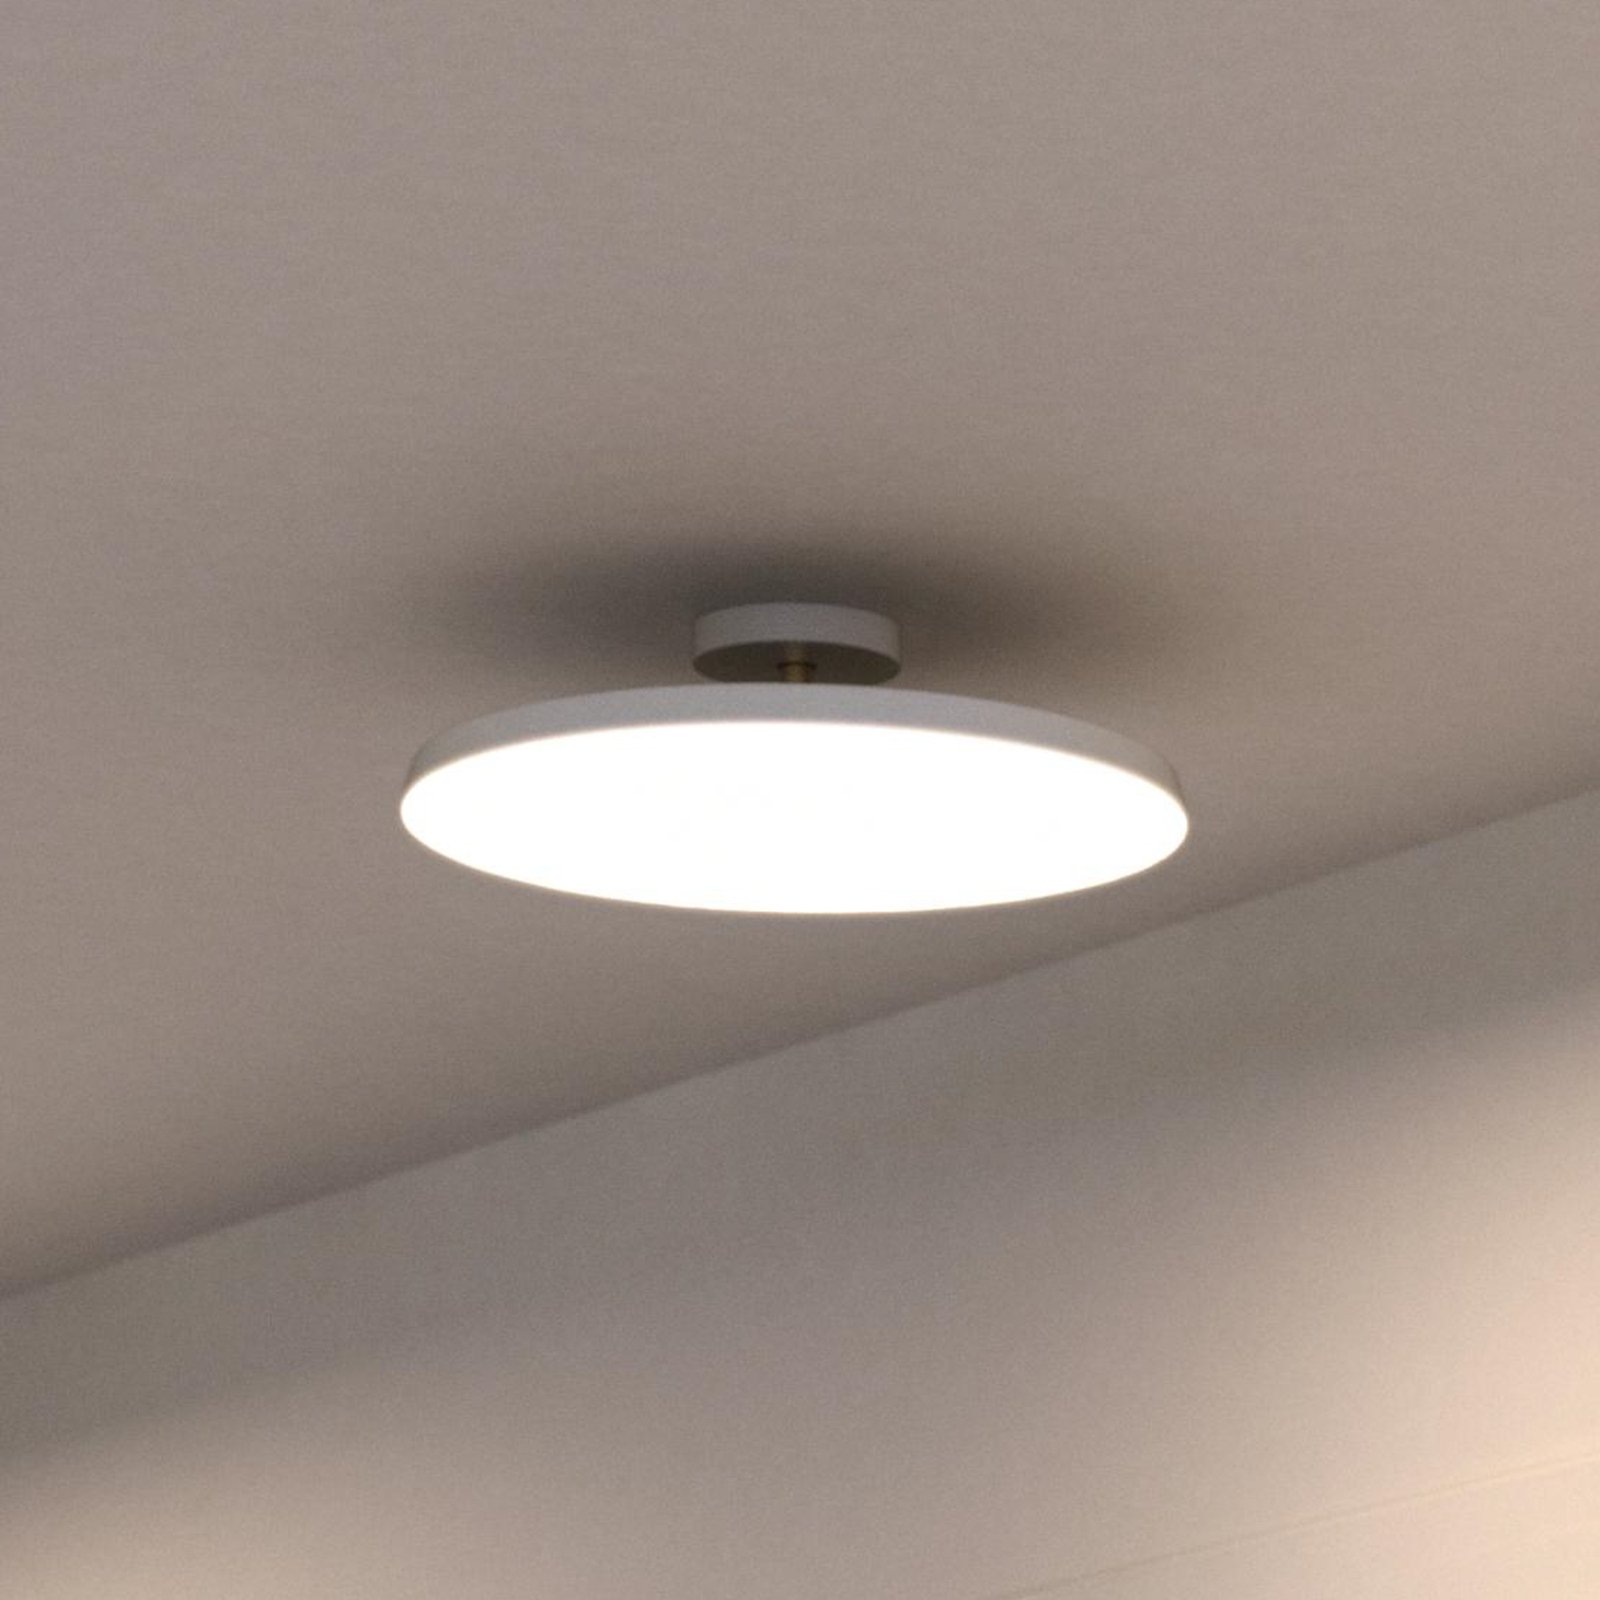 LED stropné svietidlo Kaito 2 Pro, Ø 40 cm, biele, rozstupy